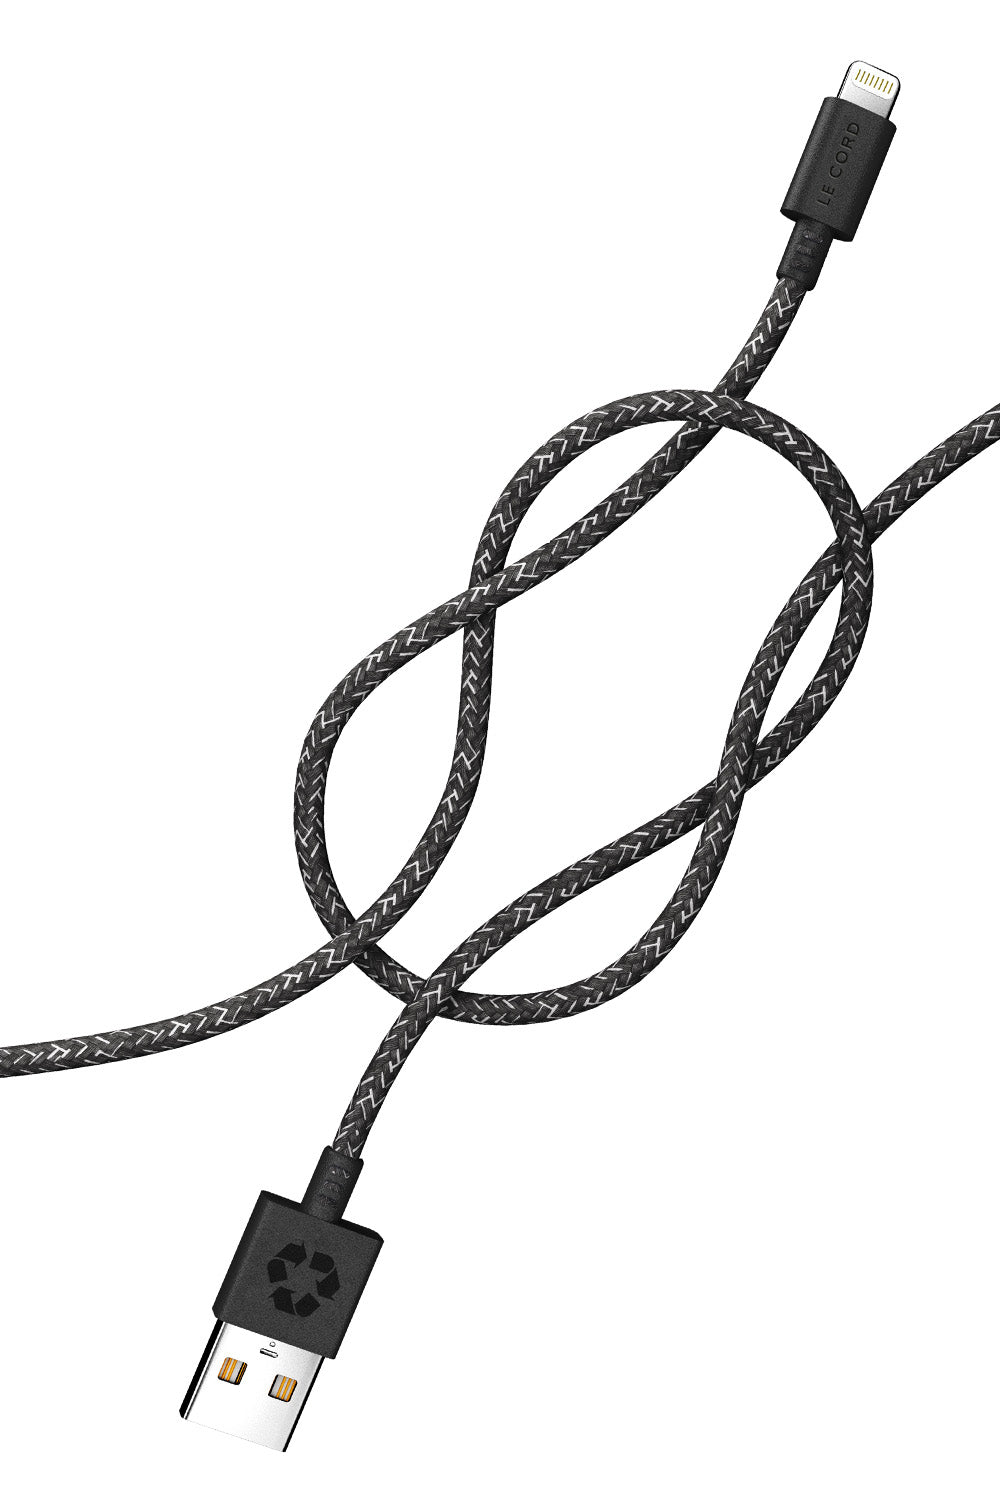 Câble Lightning iPhone noir - 2 mètres - Fabriqué à partir de filets de pêche recyclés 